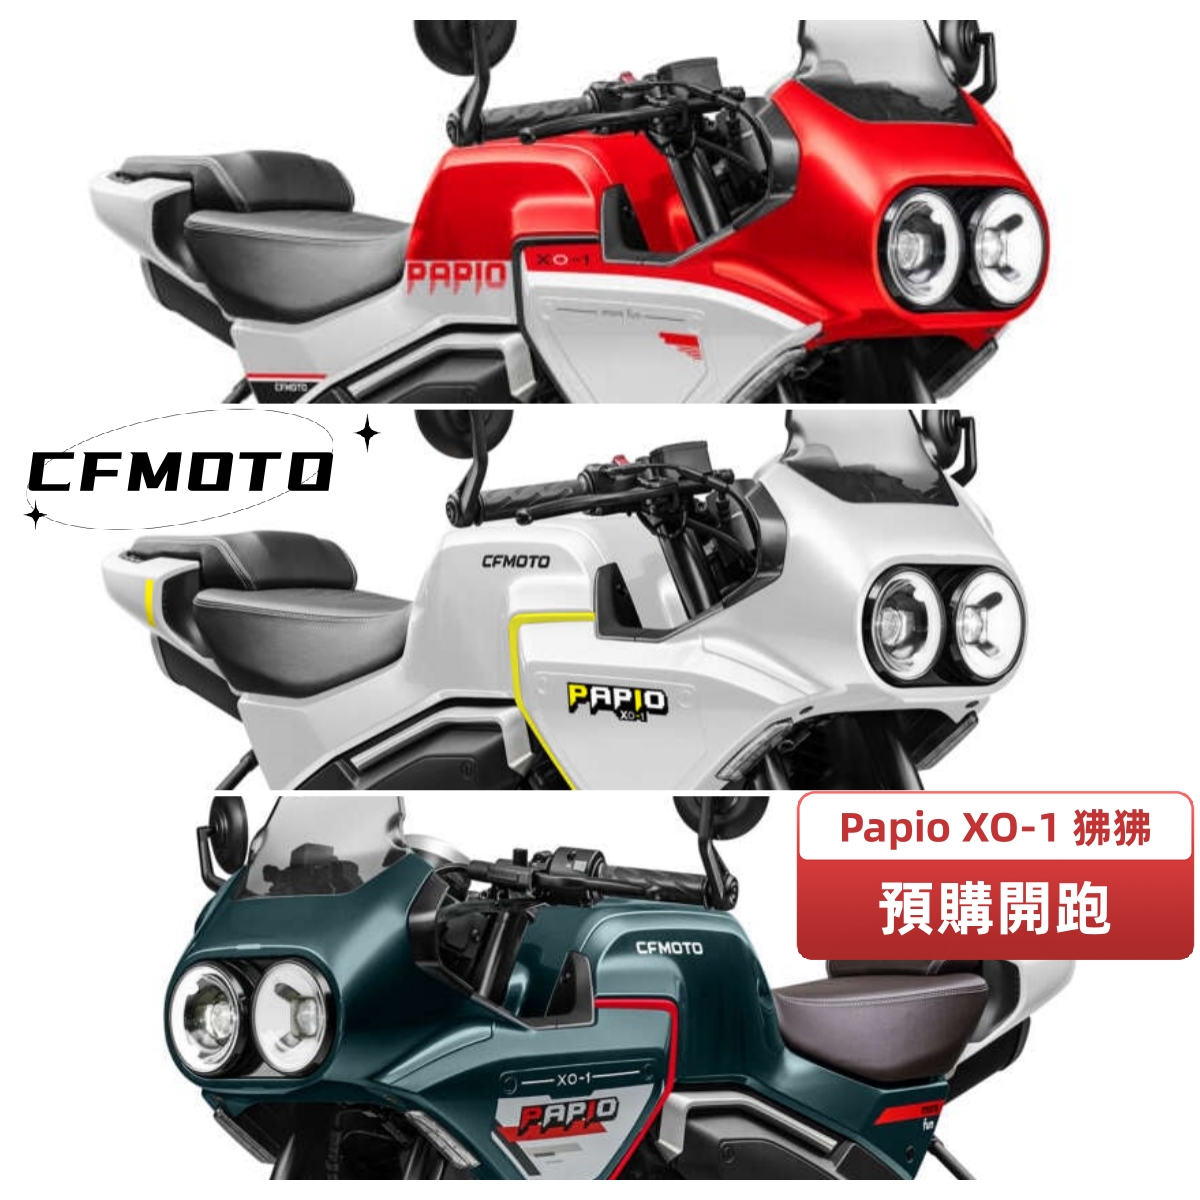 【飛翔國際】CFMOTO Papio XO-1 - 「Webike-摩托車市」 【售】預購 CFMOTO Papio XO-1 ABS 春風 #狒狒 小型復古車 雙圓燈